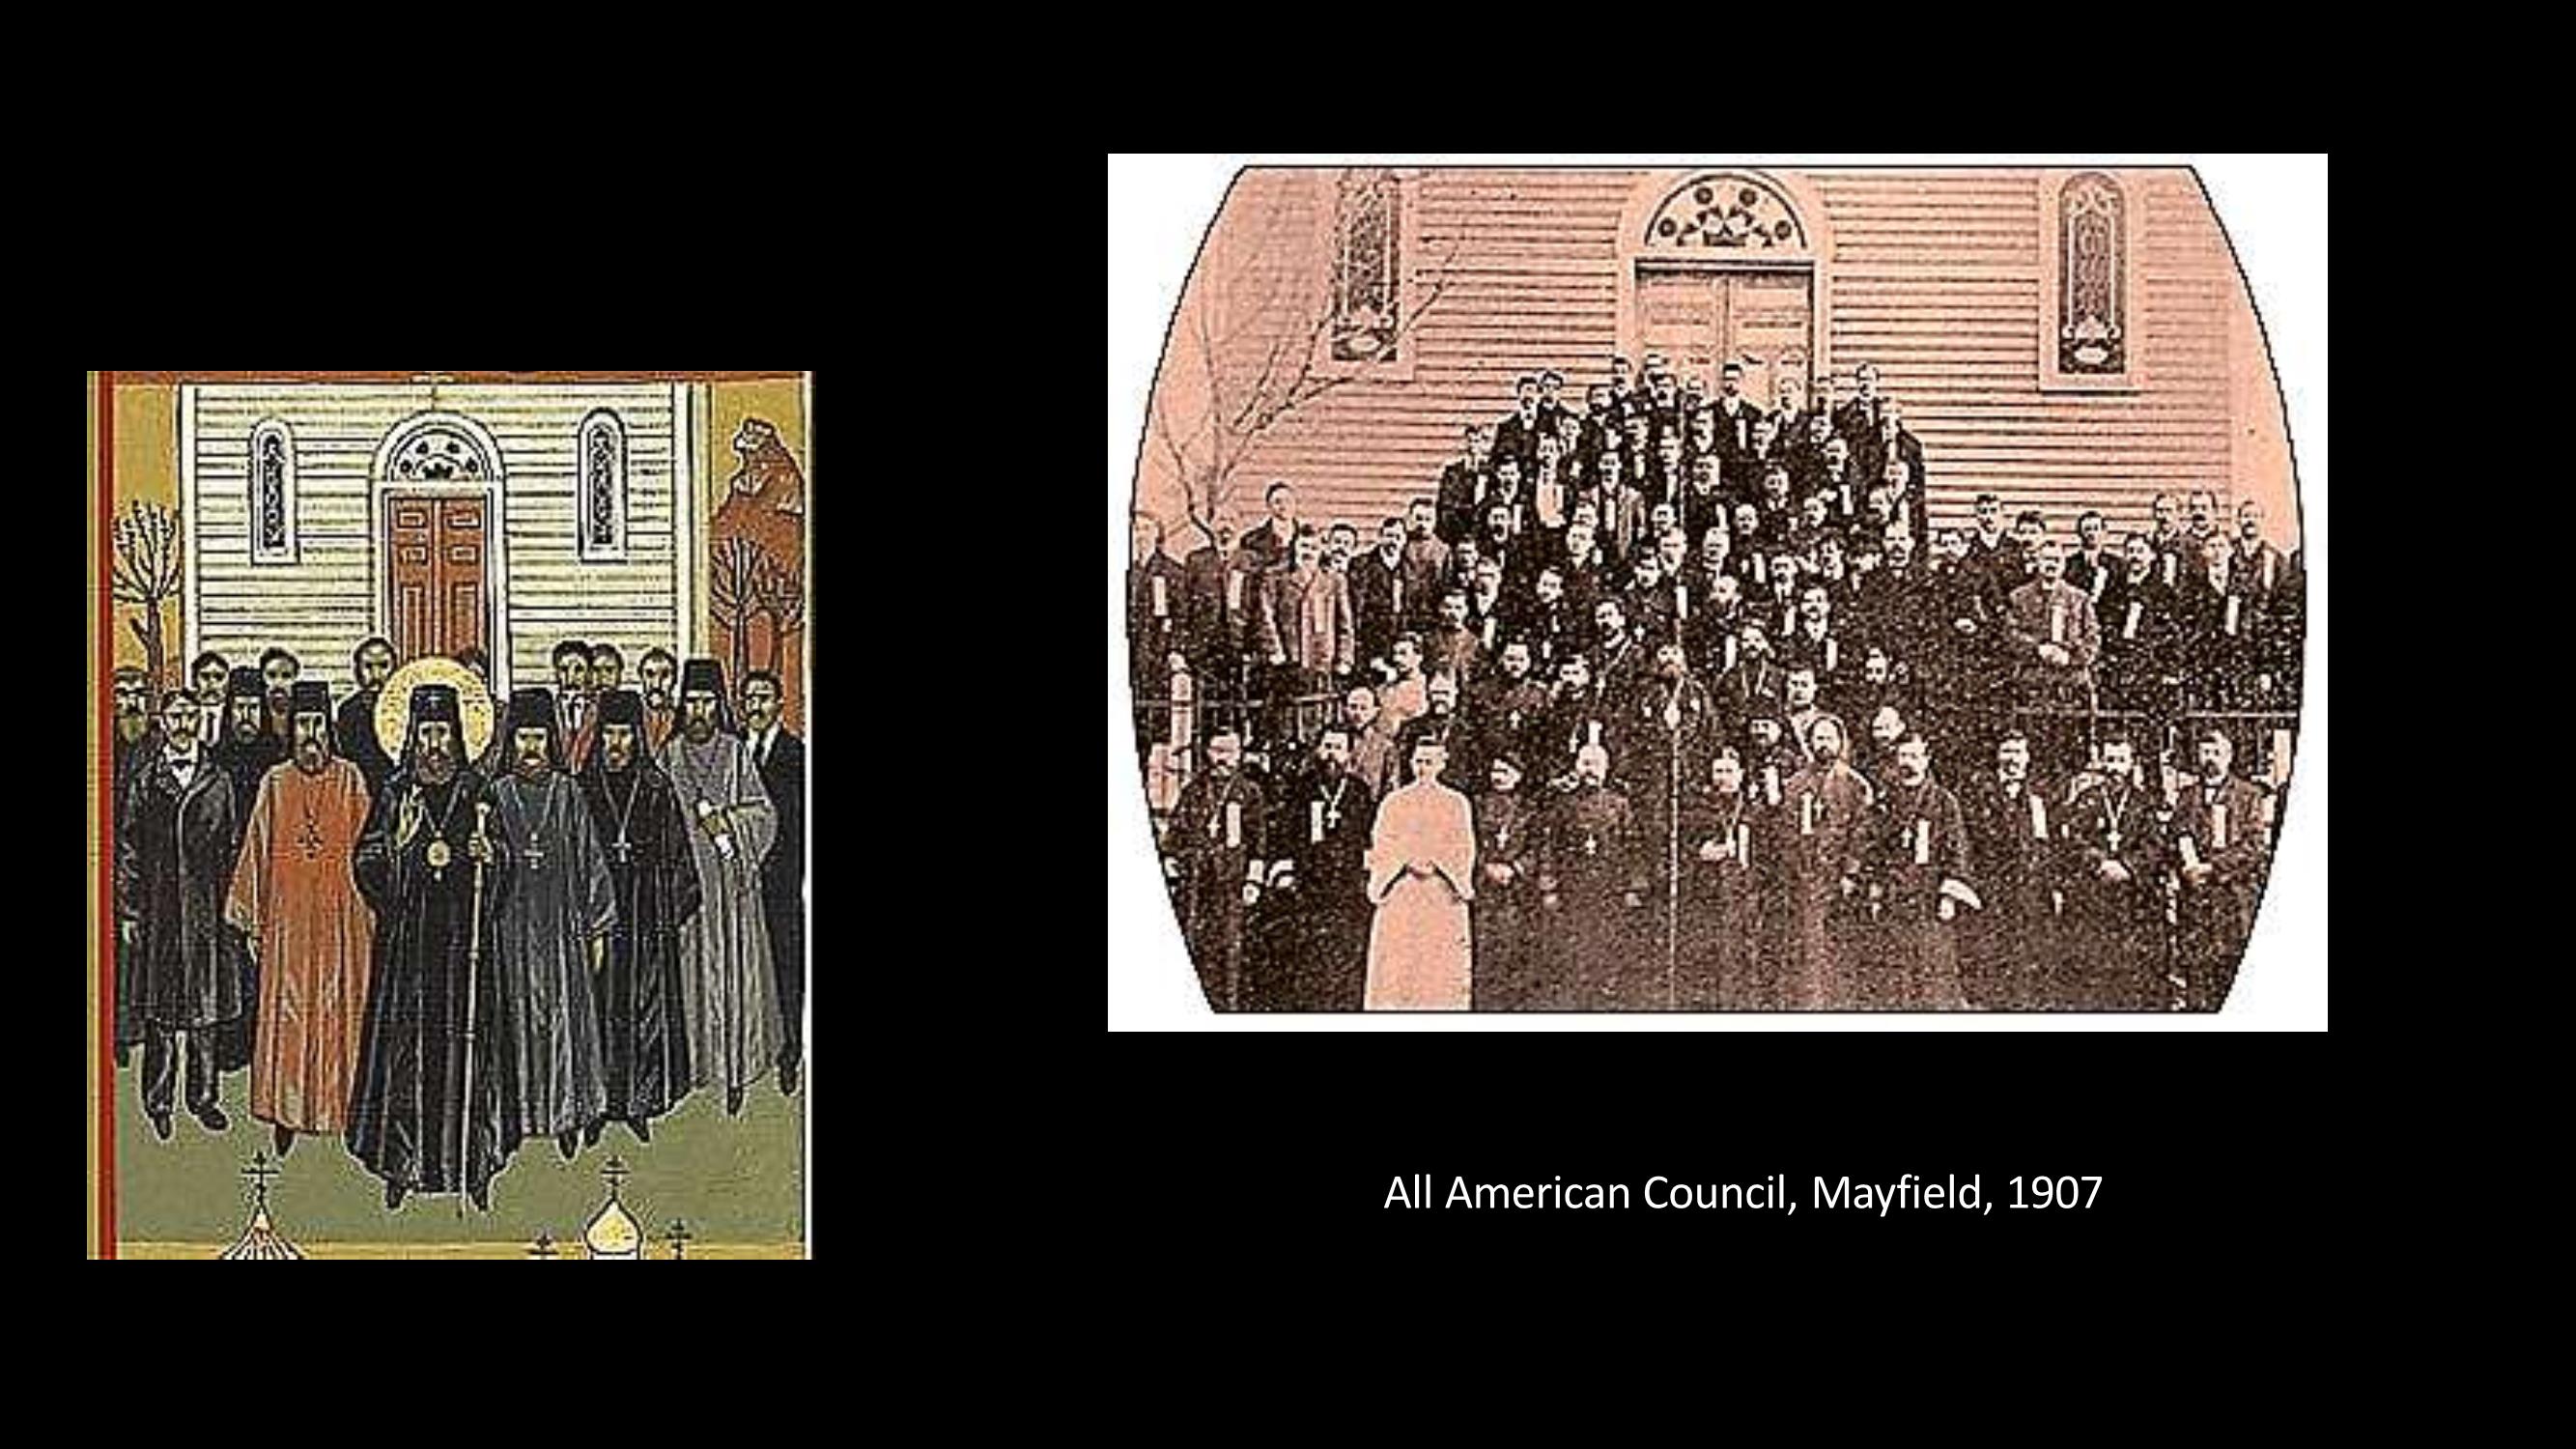 [12] Concílio americano, Mayfield, 1907